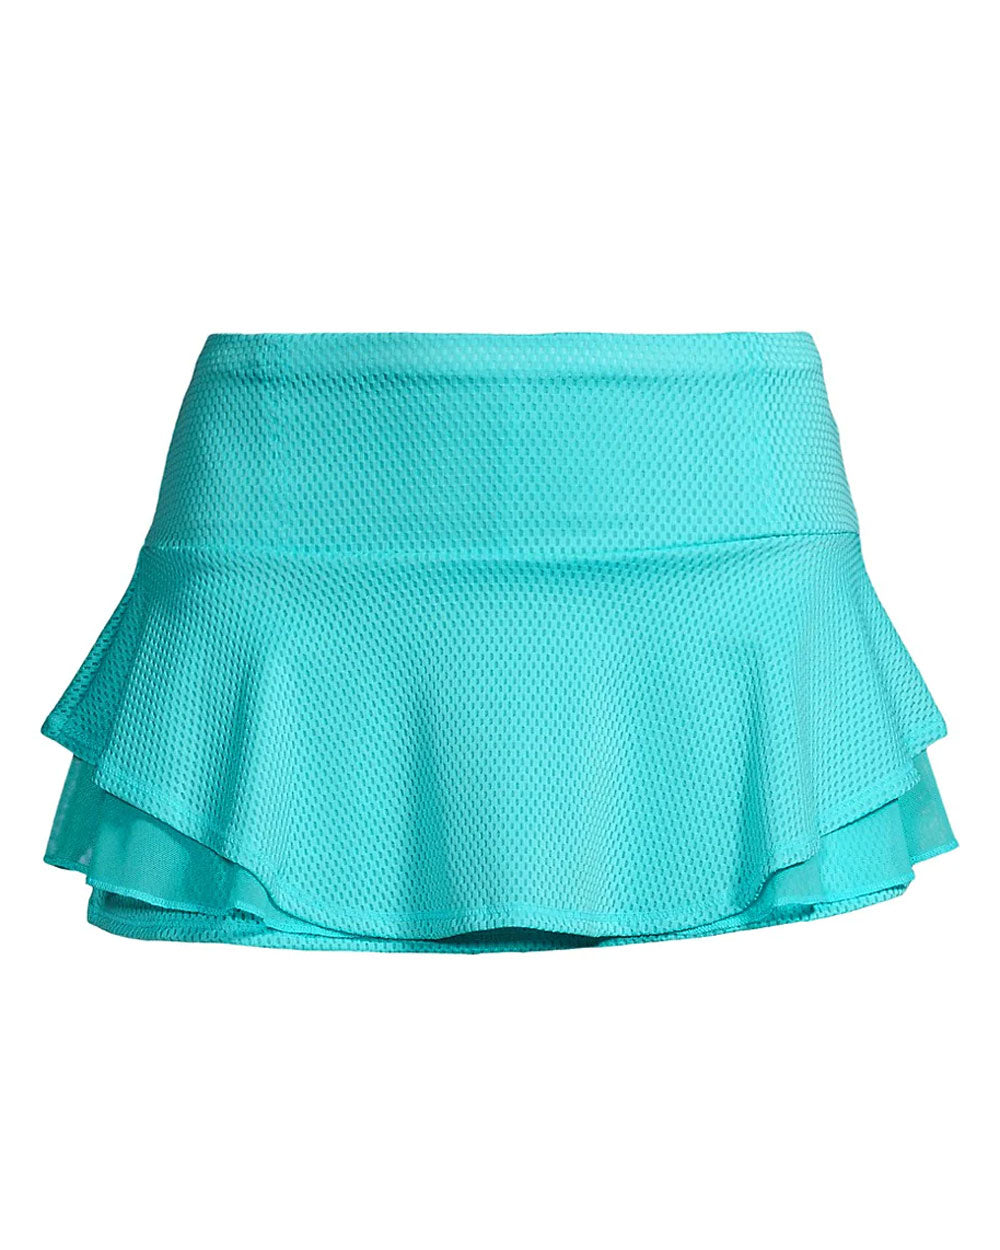 Sky Multi Layer Flip Skirt